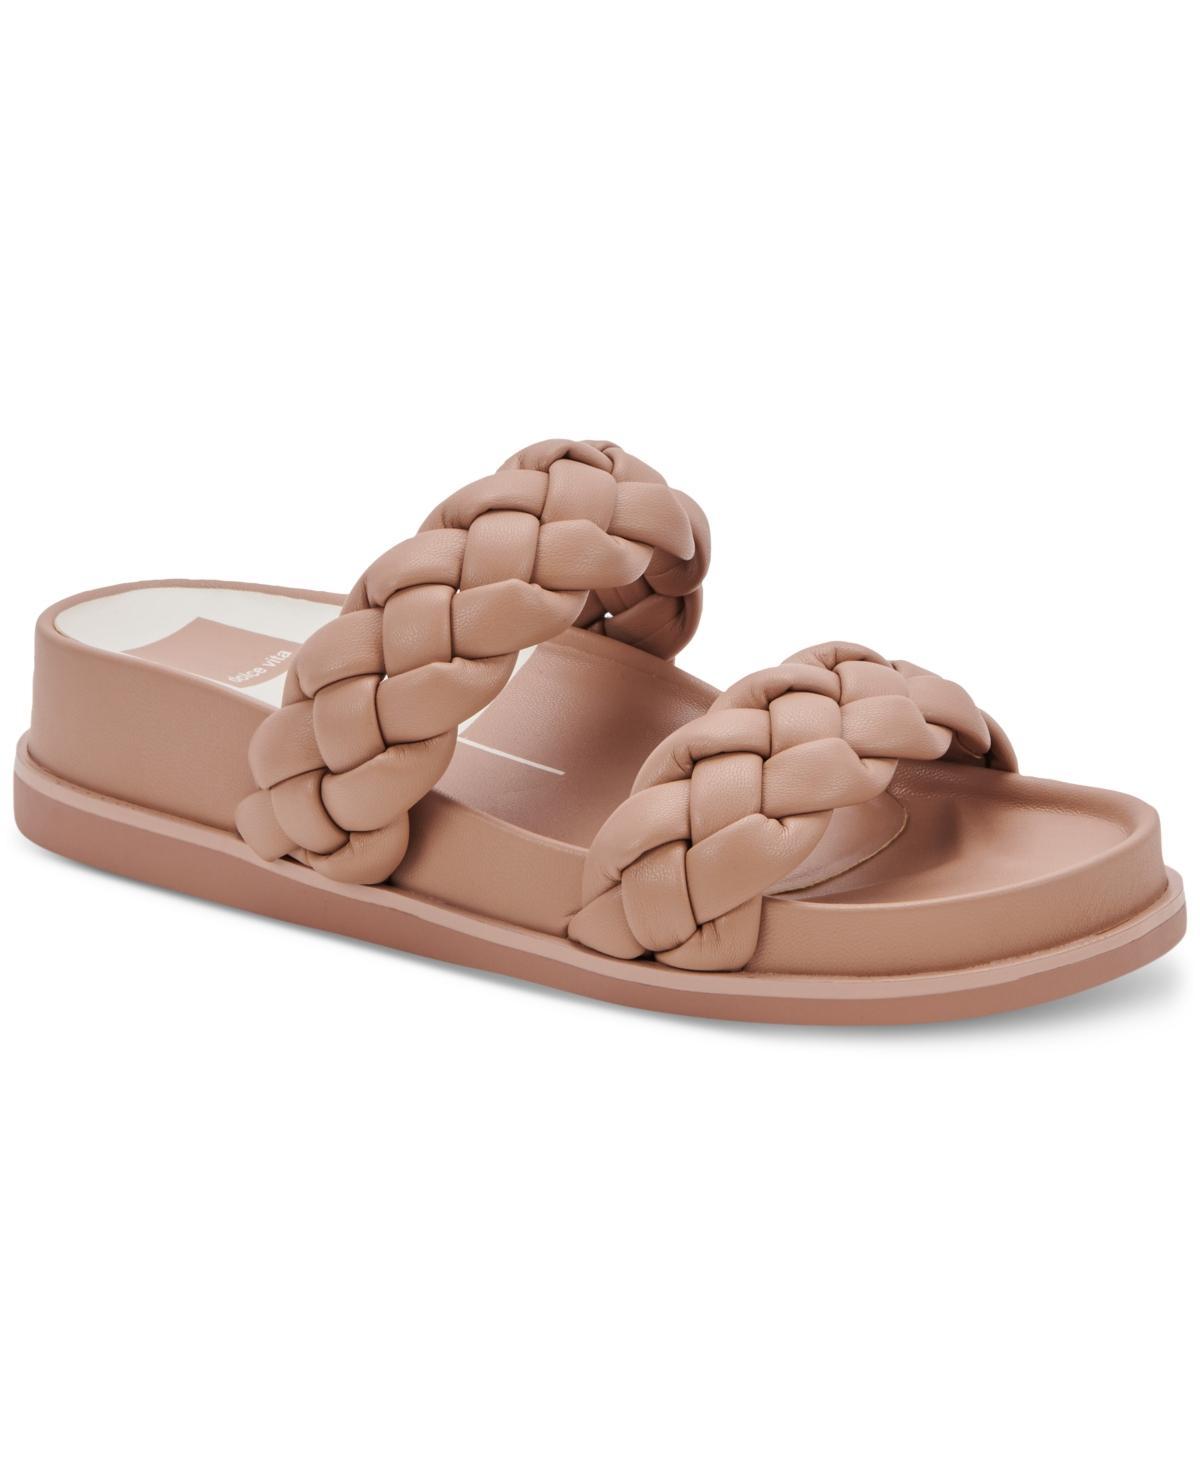 Dolce Vita Signe Slide Sandal Product Image